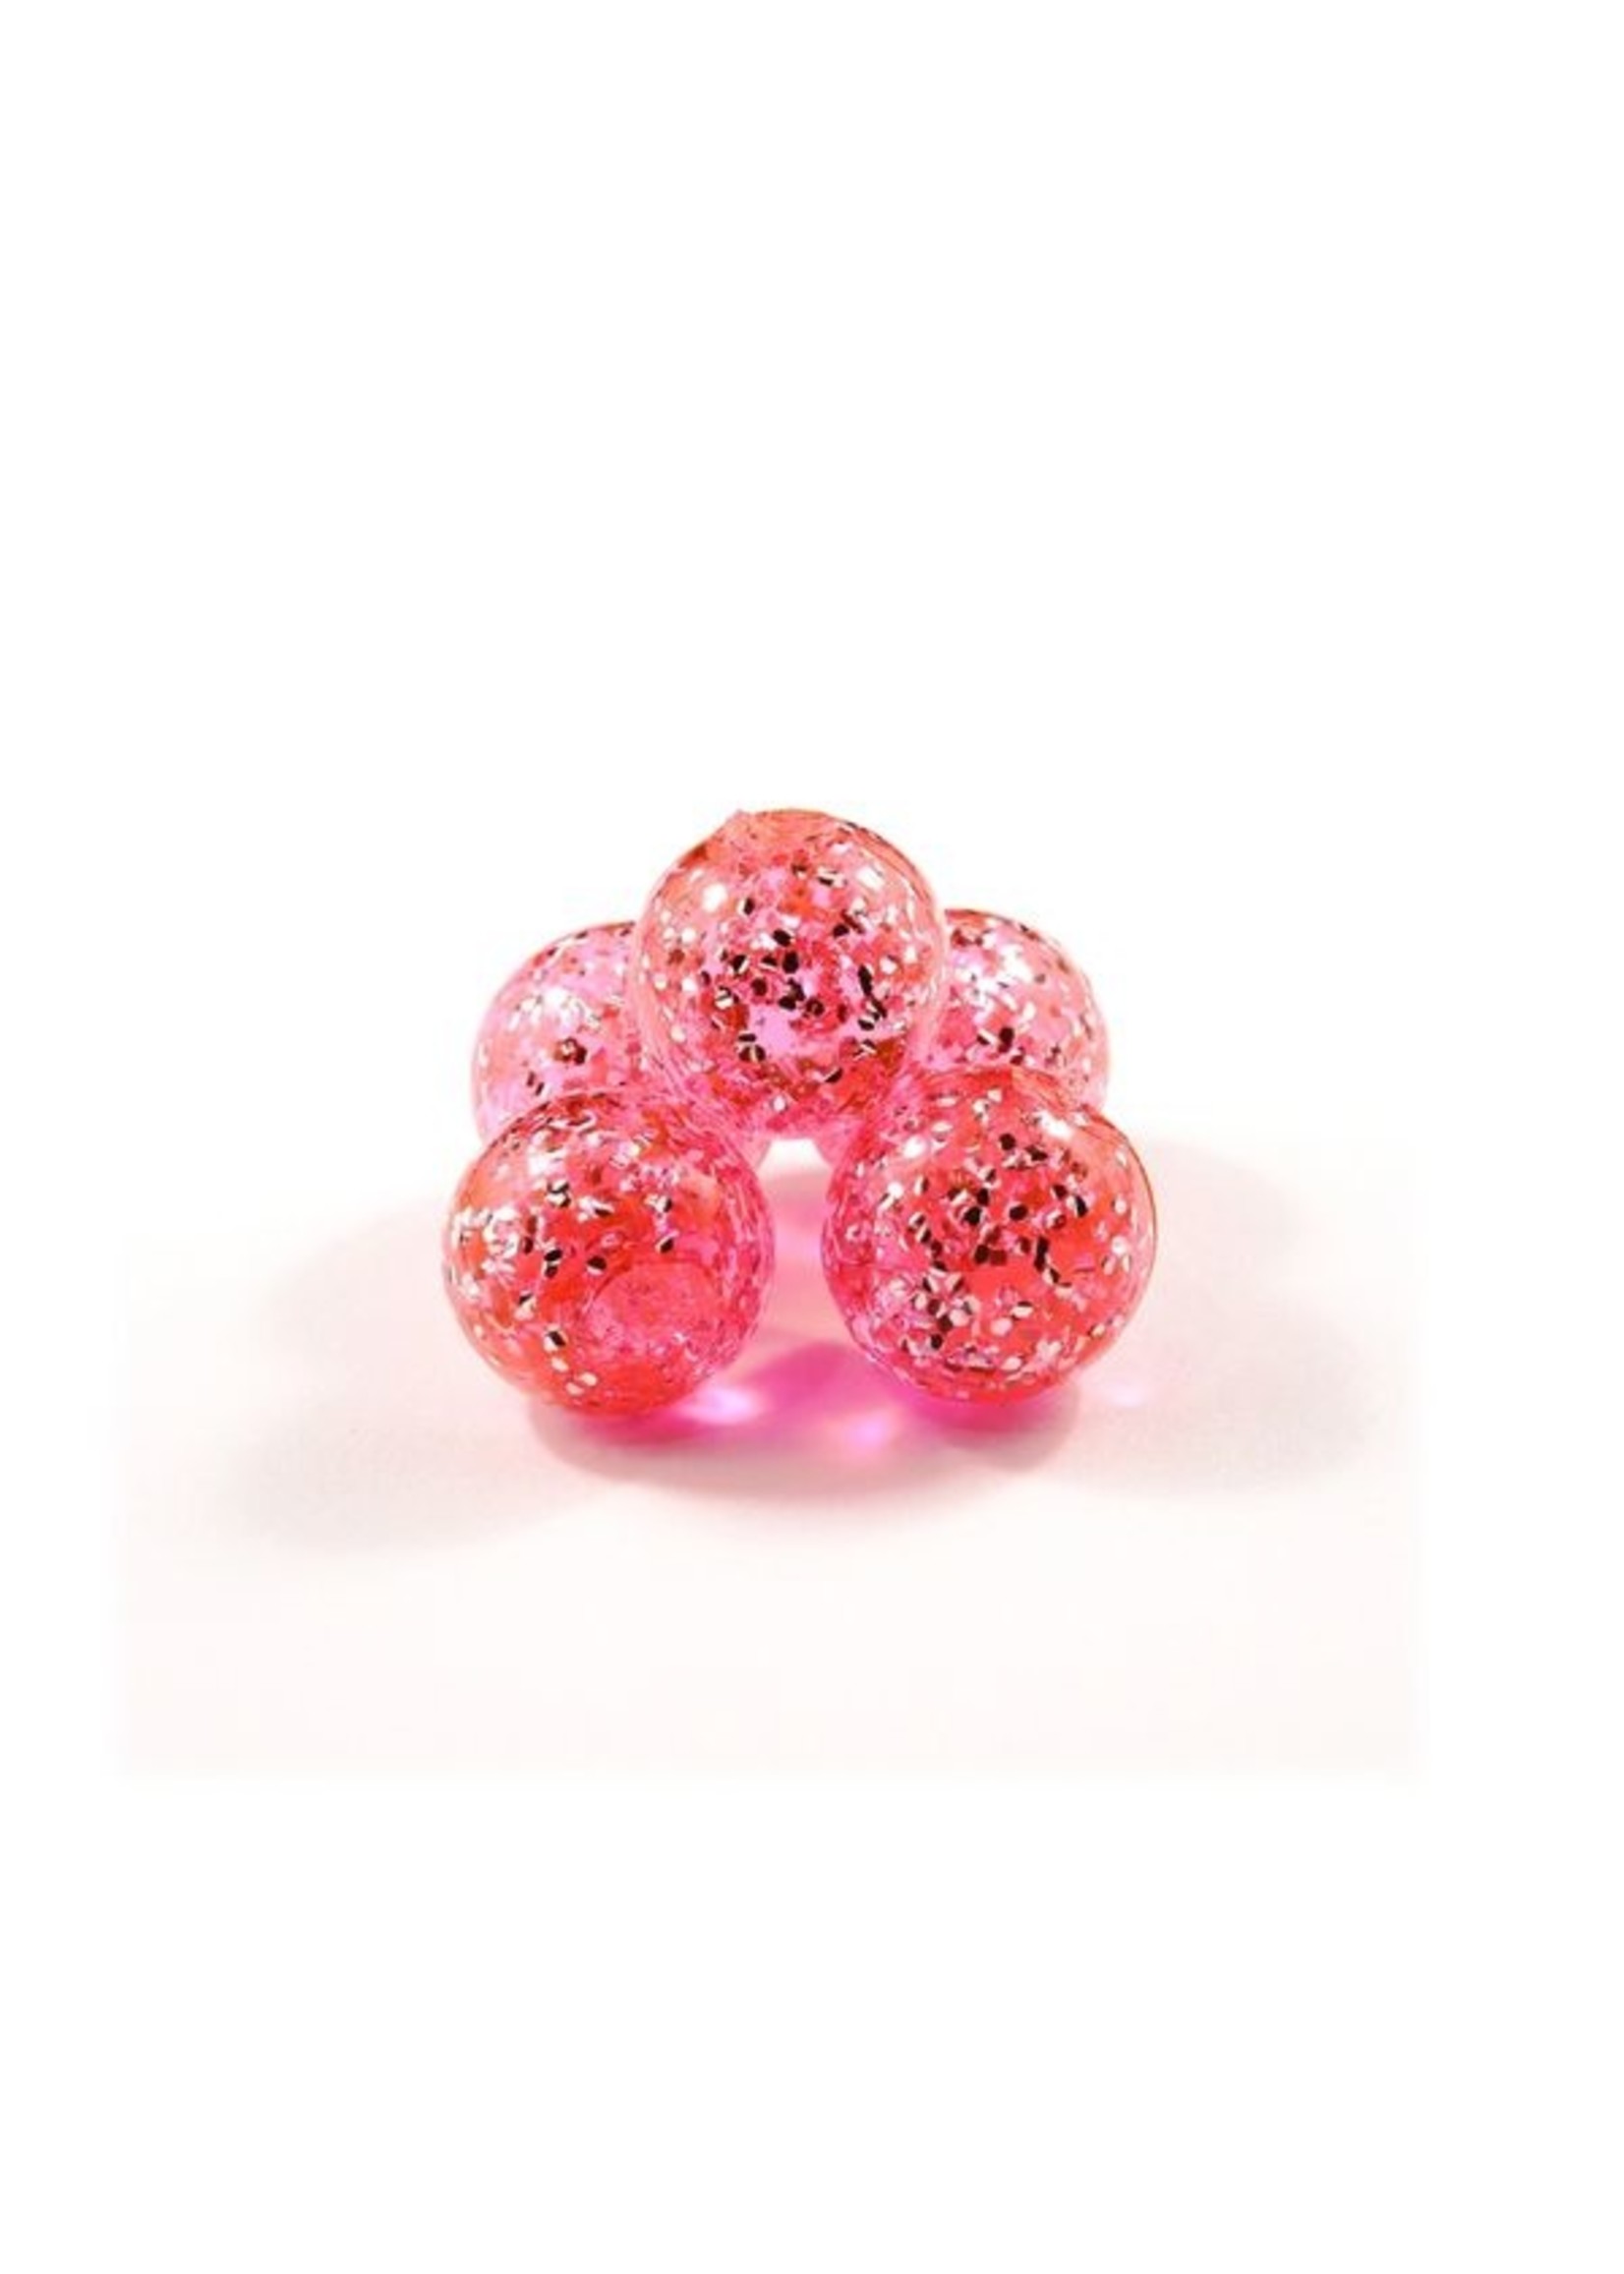 Cleardrift Cleardrift Glitter Bomb Soft Beads Candy Apple 10mm